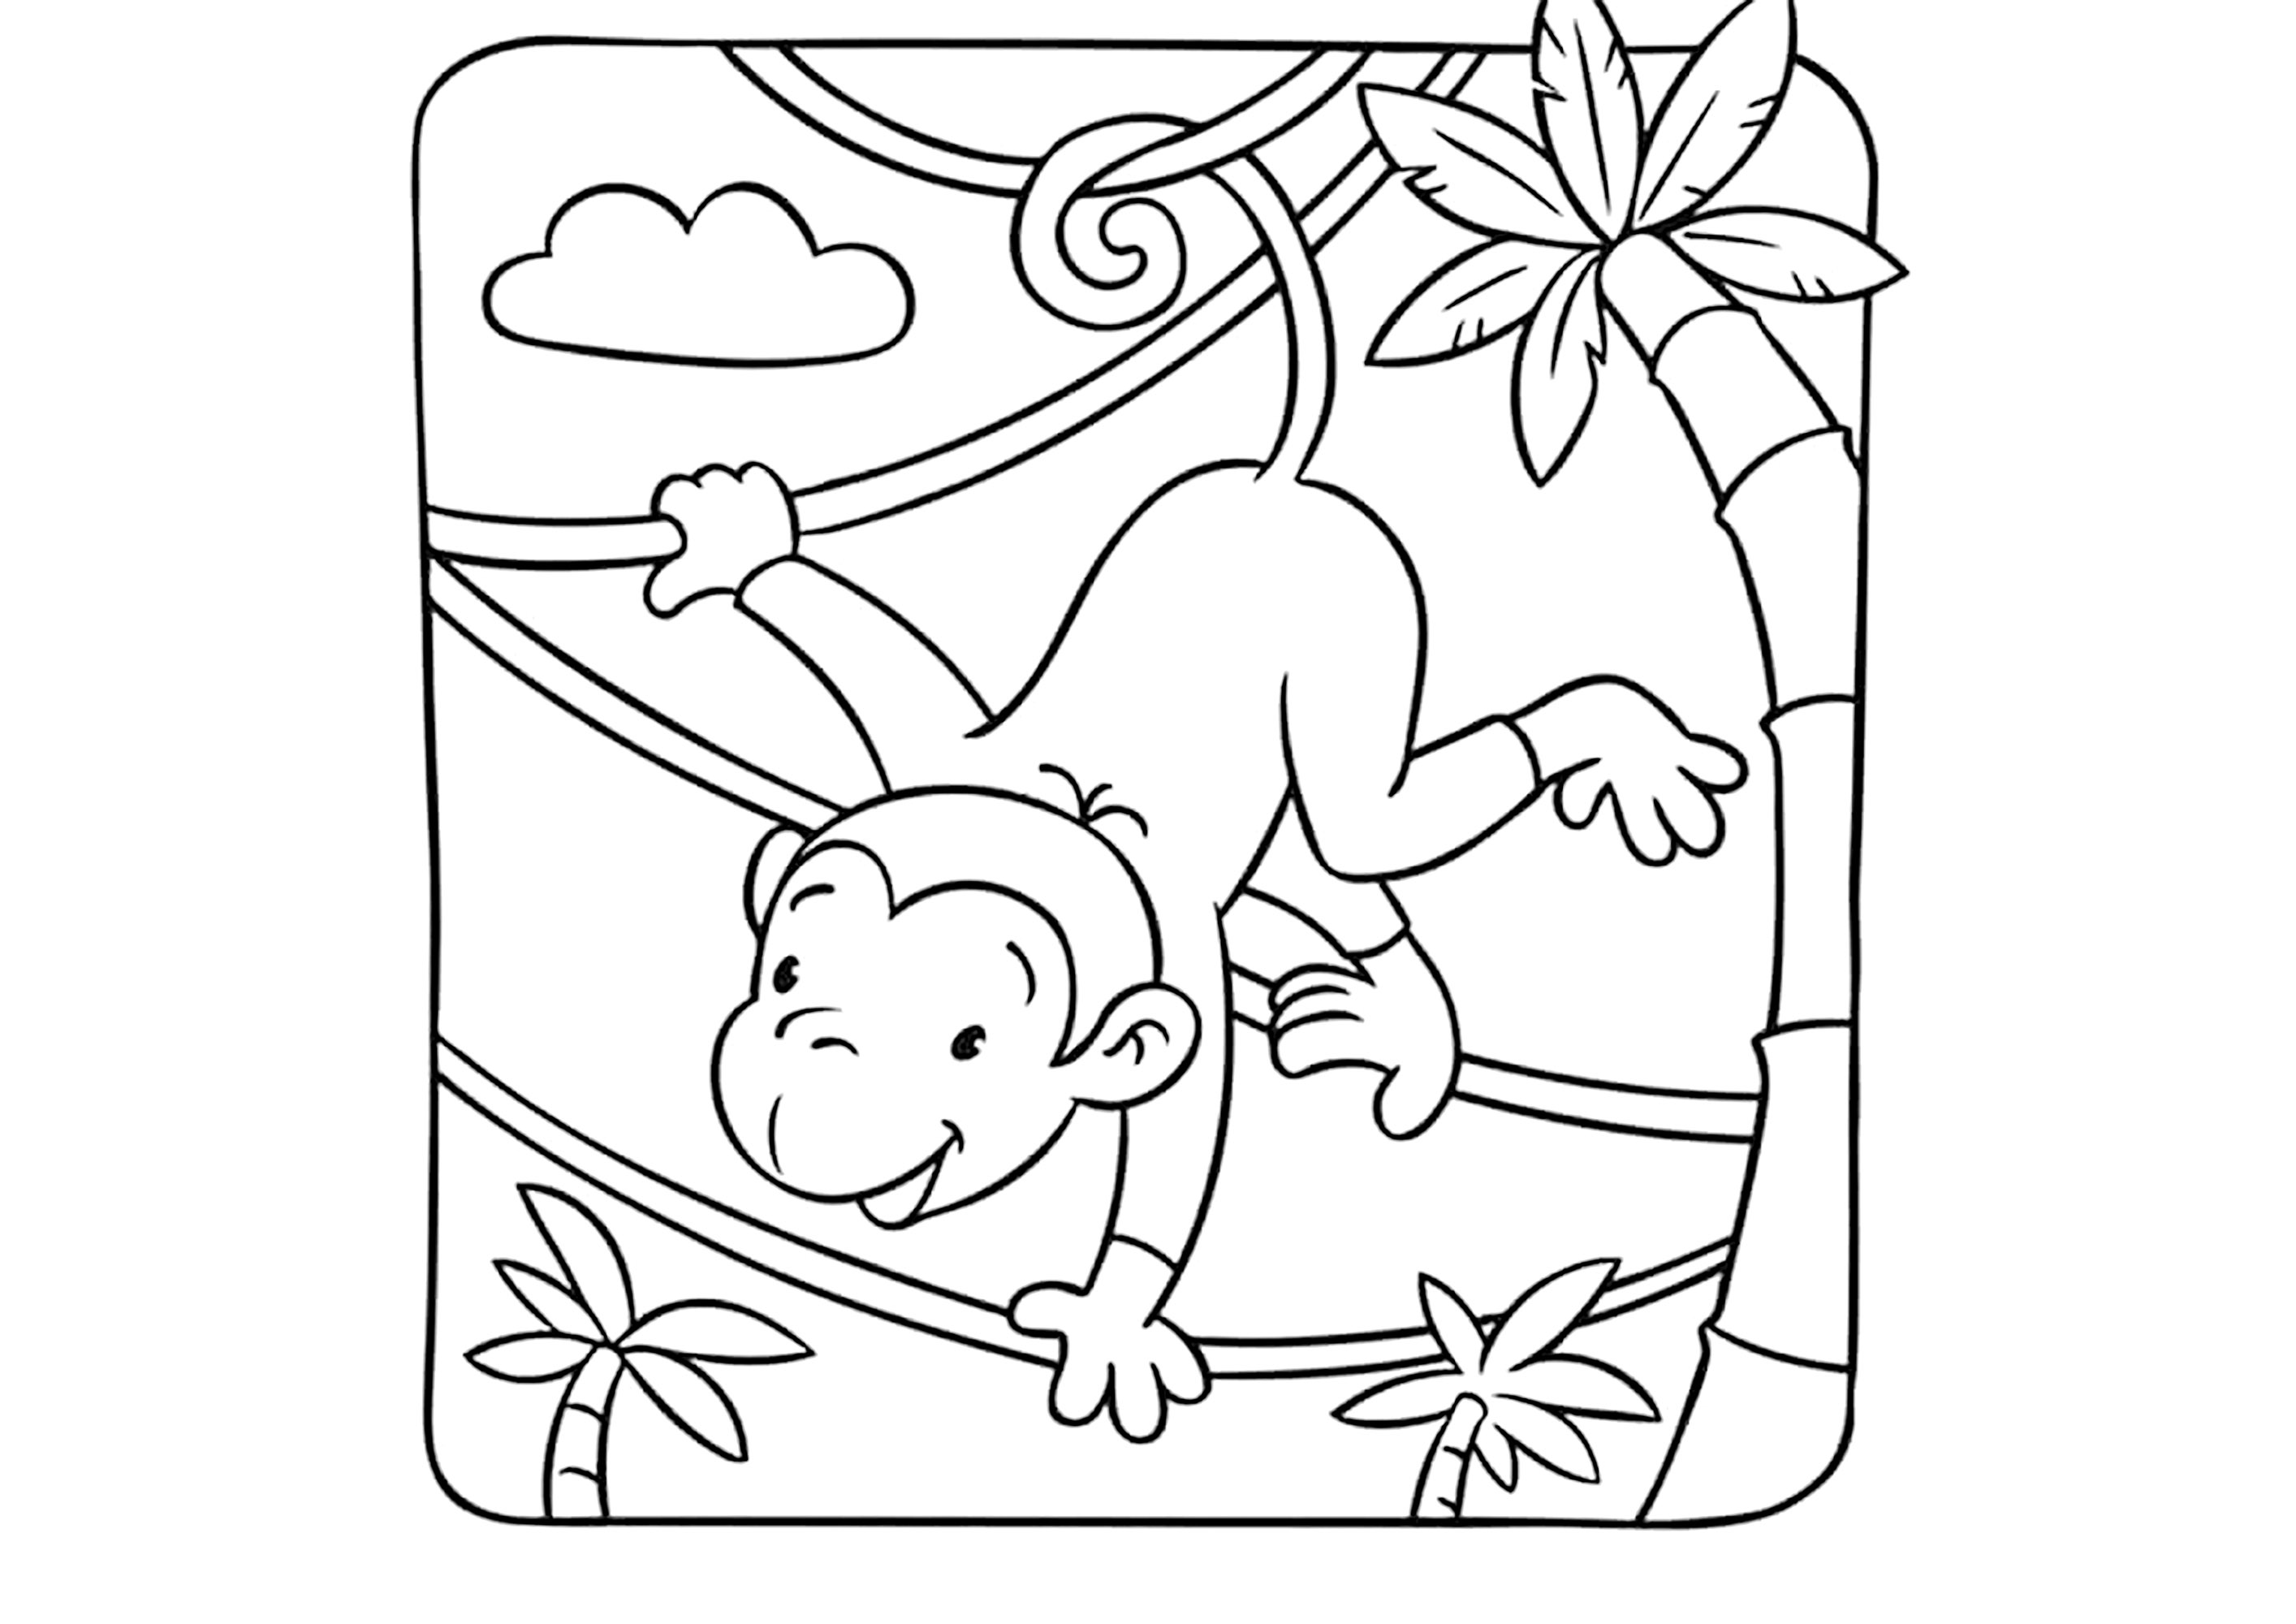 Mono columpiándose de liana en liana